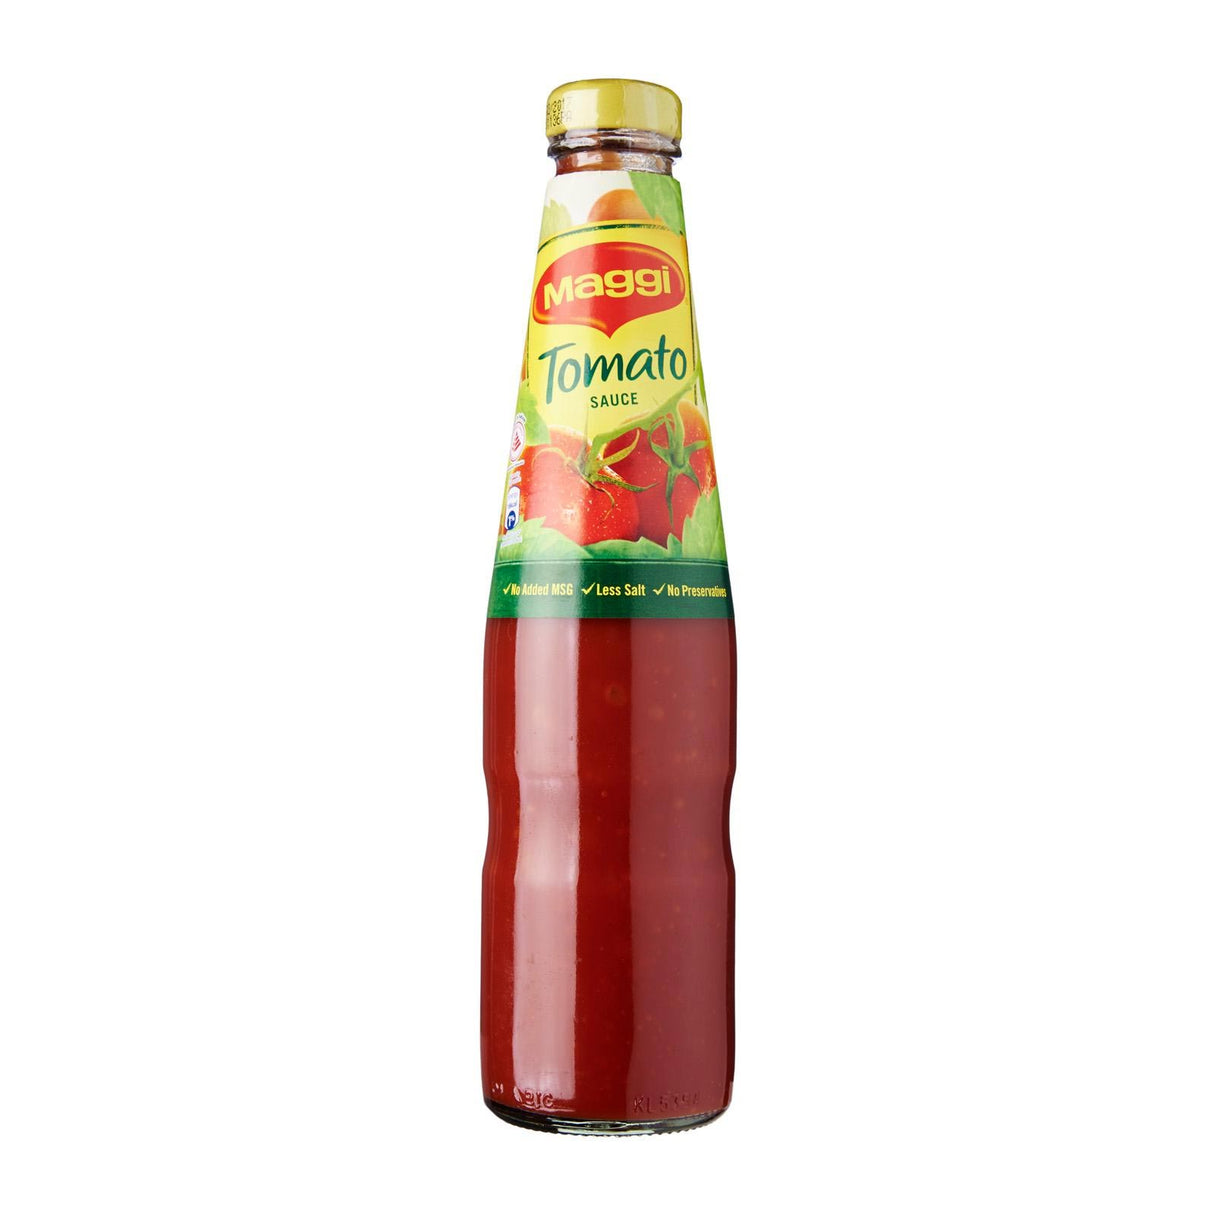 Maggi Tomato Ketchup Sauce 475g